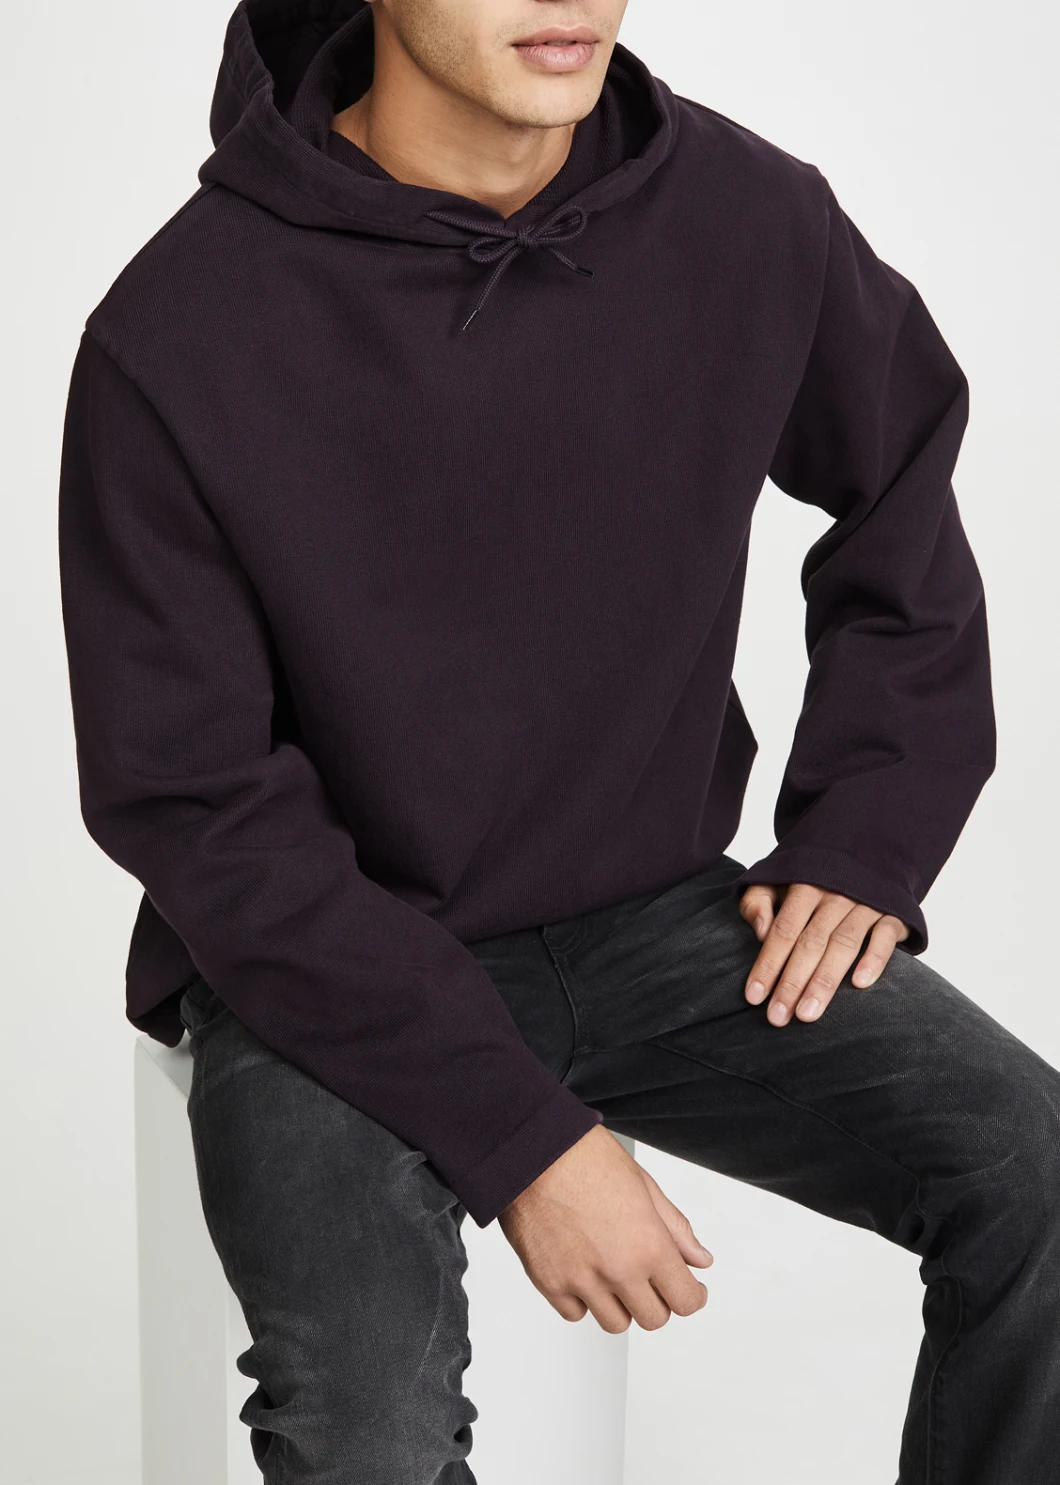 Factory Custom Printing Sports Oversized Streetwear Hoodie for Men Pullover Sweatshirt